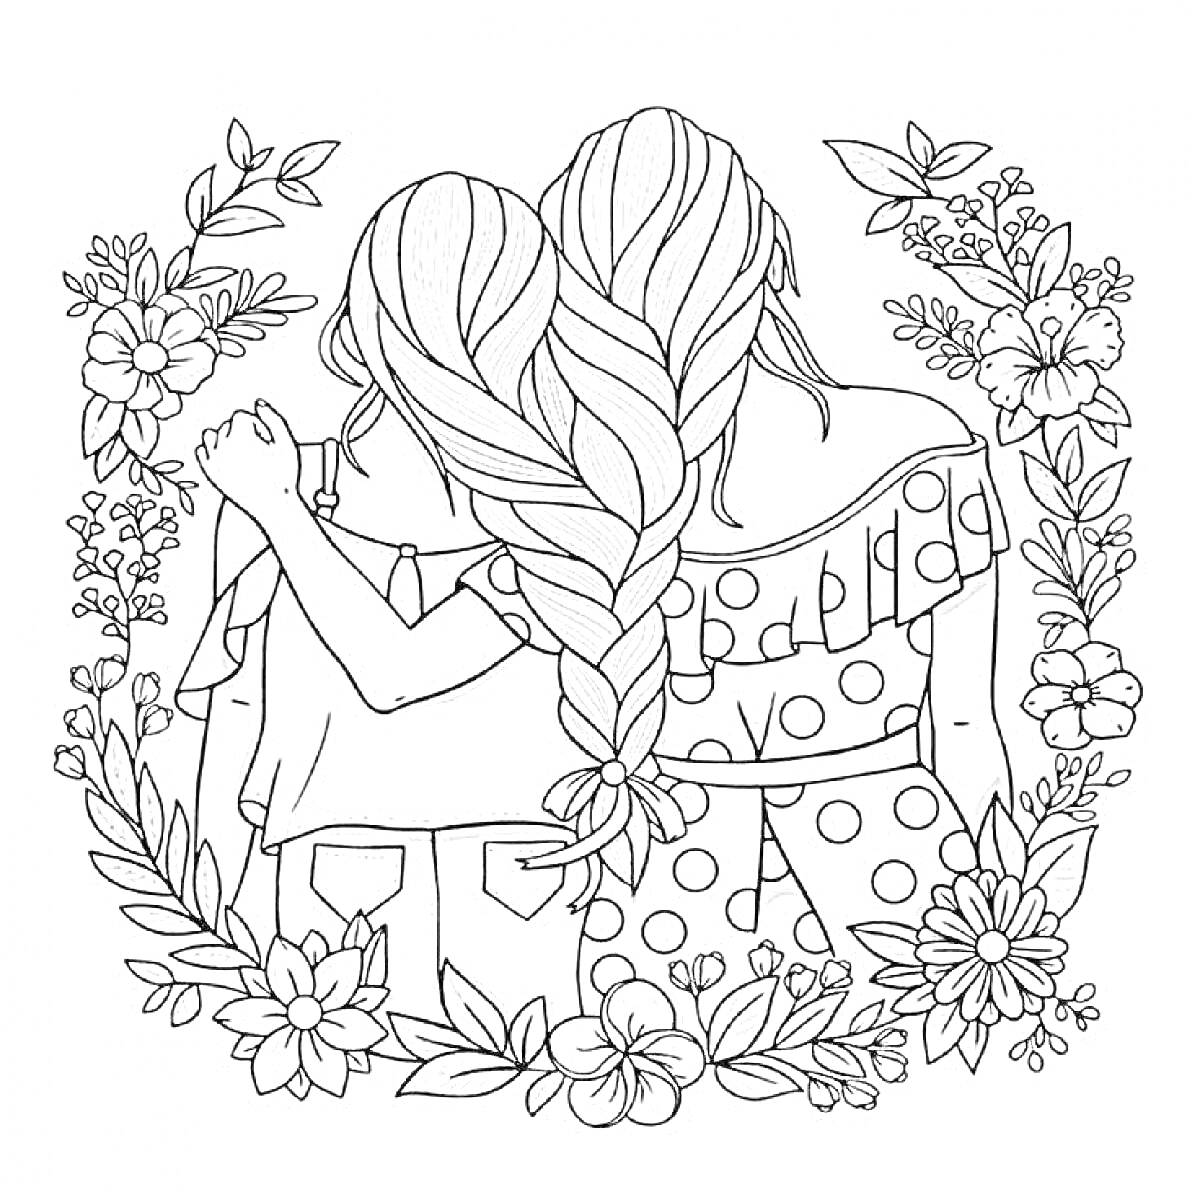 Раскраска Две девочки с косами, в одежде с воланами, окруженные цветами